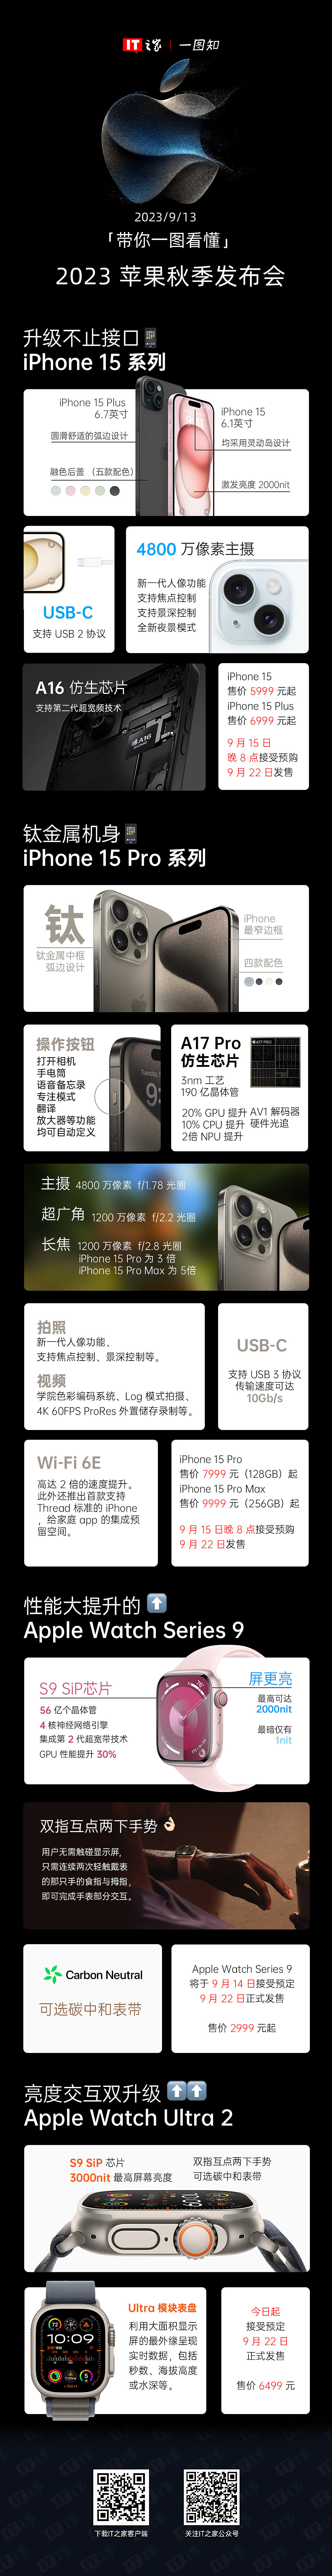 （已结束）立减 1051 元： iPhone 15 Pro 256G 京东自营 7948 元百亿补贴 - 1